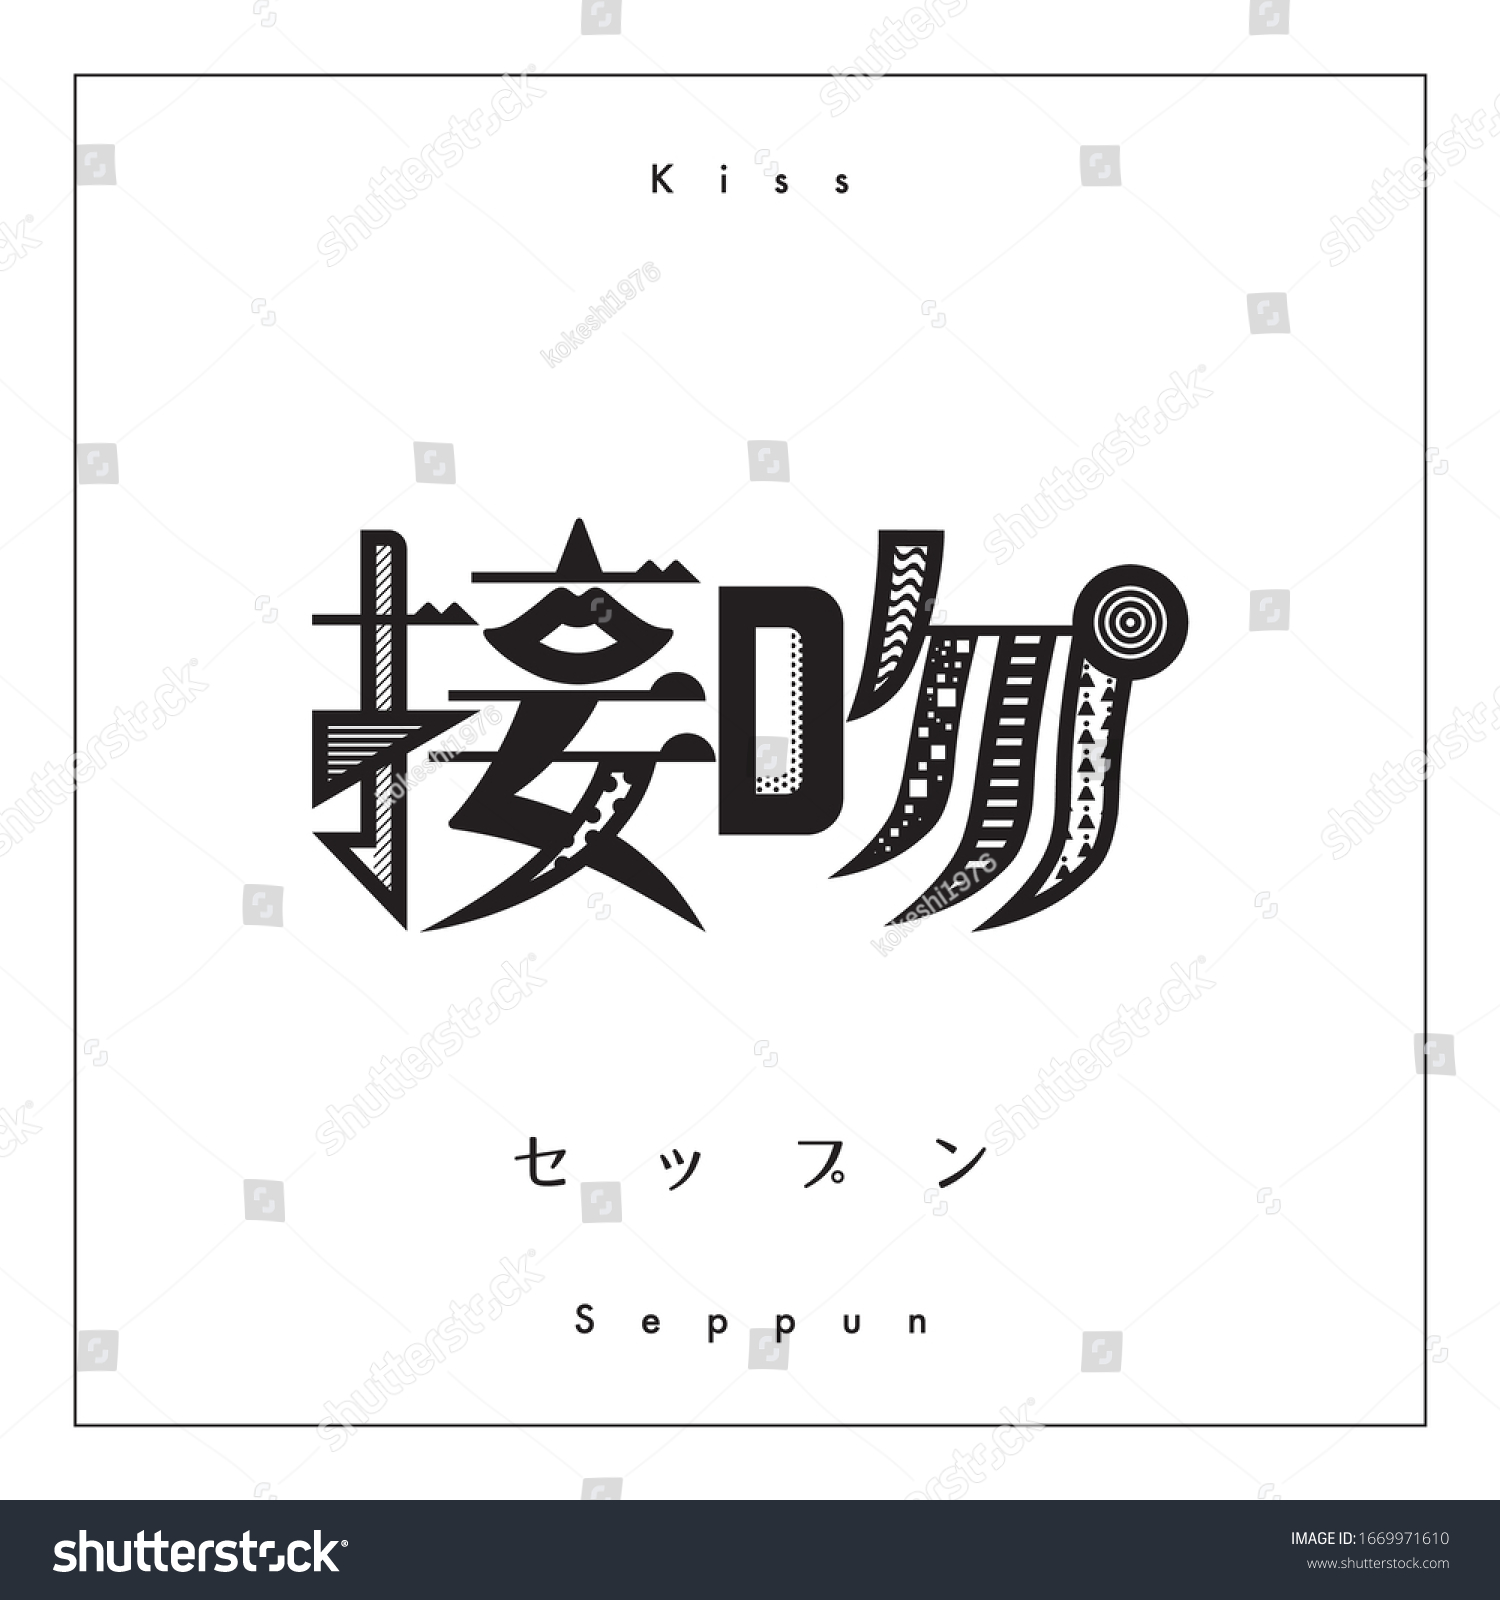 キスの漢字 漢字のデザイン 活字体のデザイン 文字の翻訳 セップンとはキスの意味 のベクター画像素材 ロイヤリティフリー